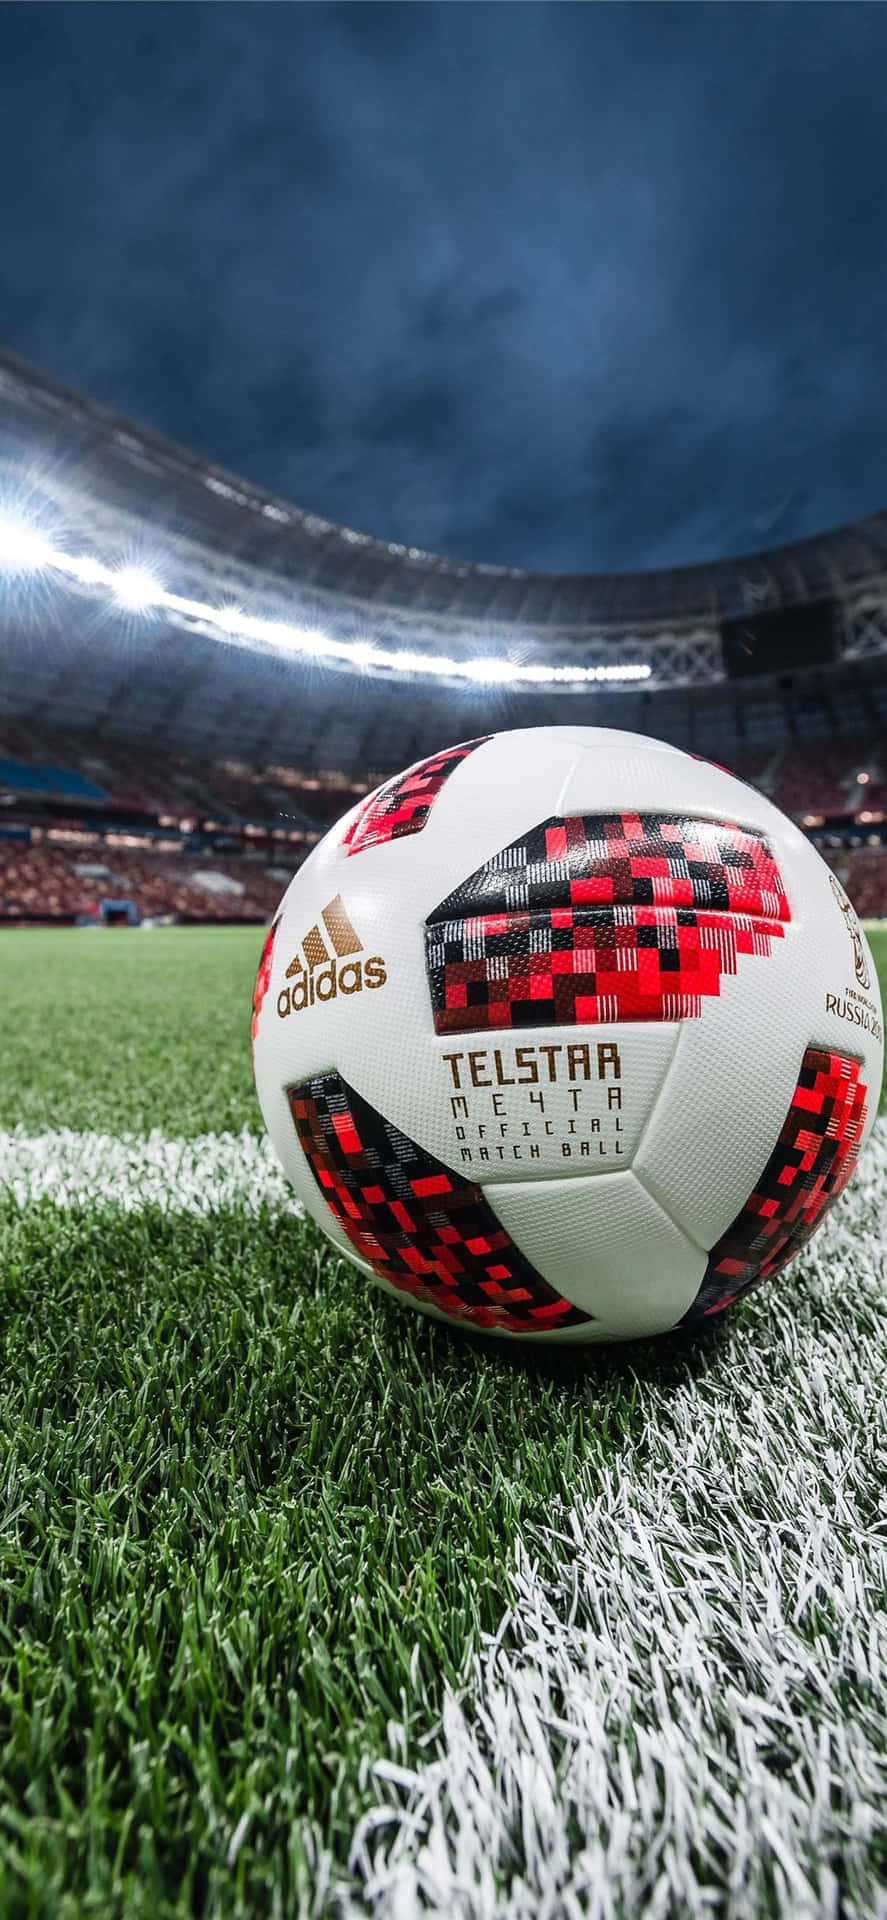 Adidas Telstar Soccer Ball Stadium Wallpaper